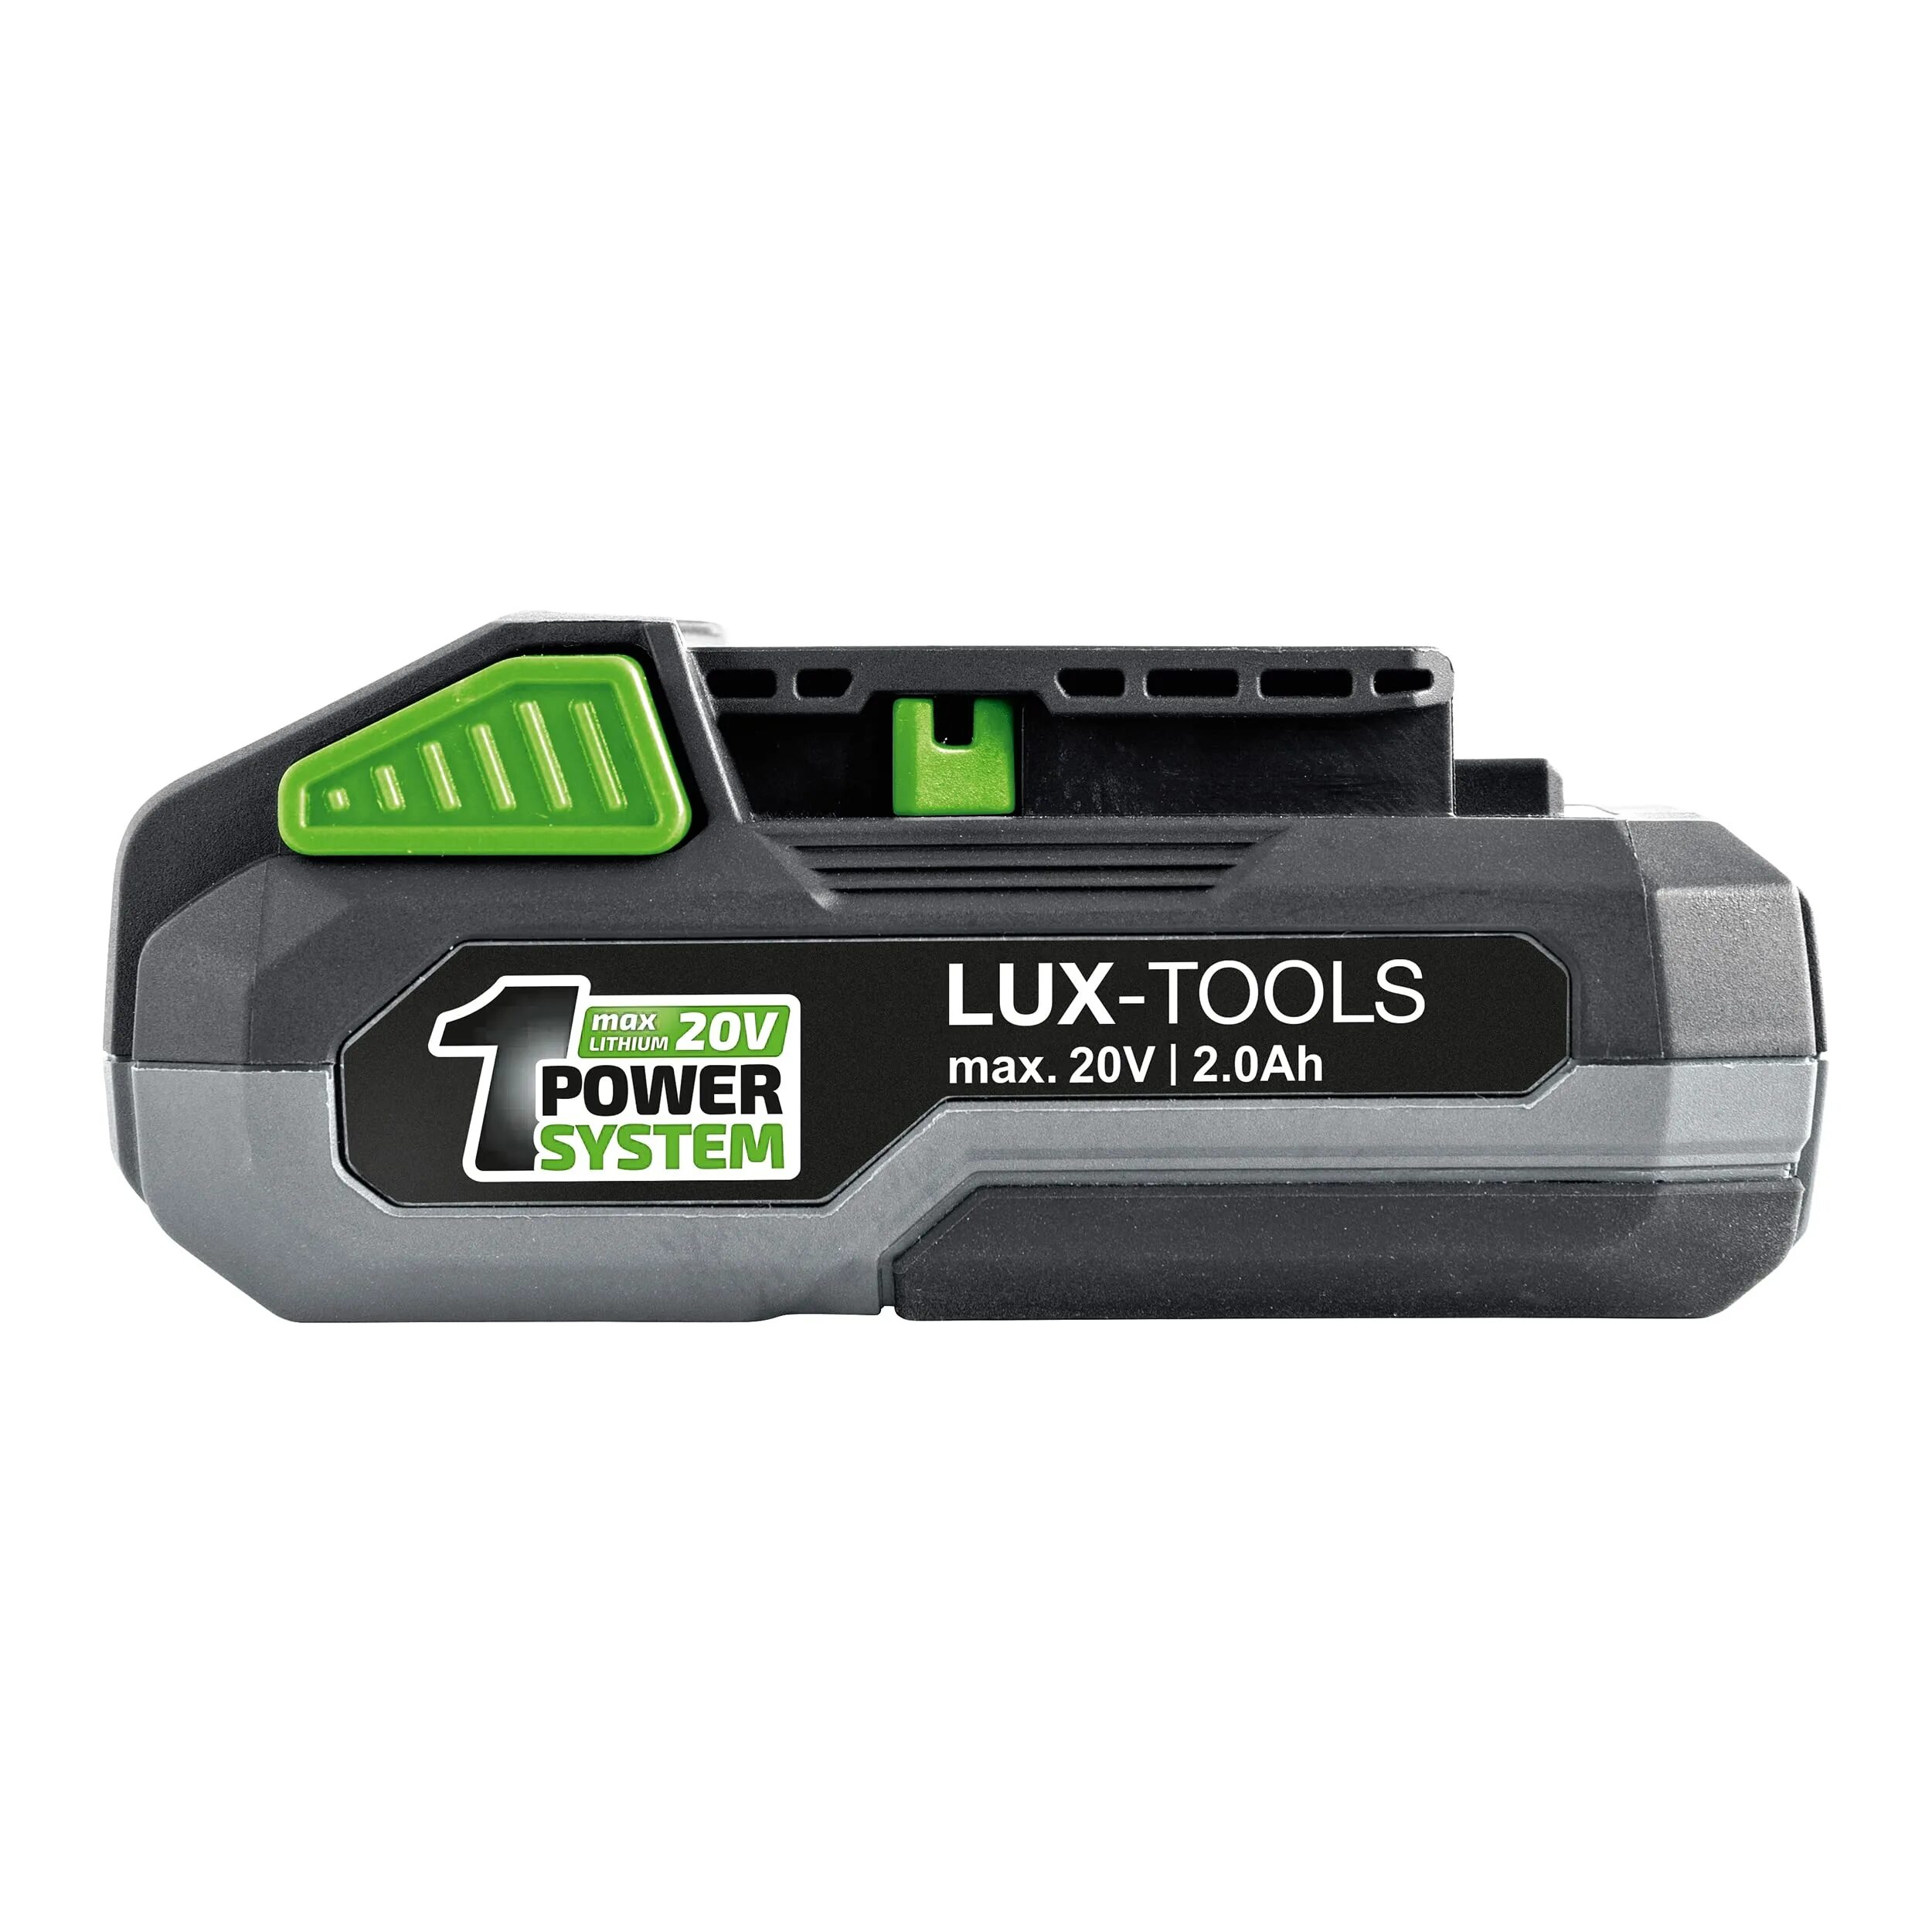 Аккумулятор Lux Tools 20v. Шуруповерт Lux Tools 20v аккумулятор. Аккумулятор Lux Tools 20v 2.0Ah. Аккумулятор Lux-Tools 20v Obi.